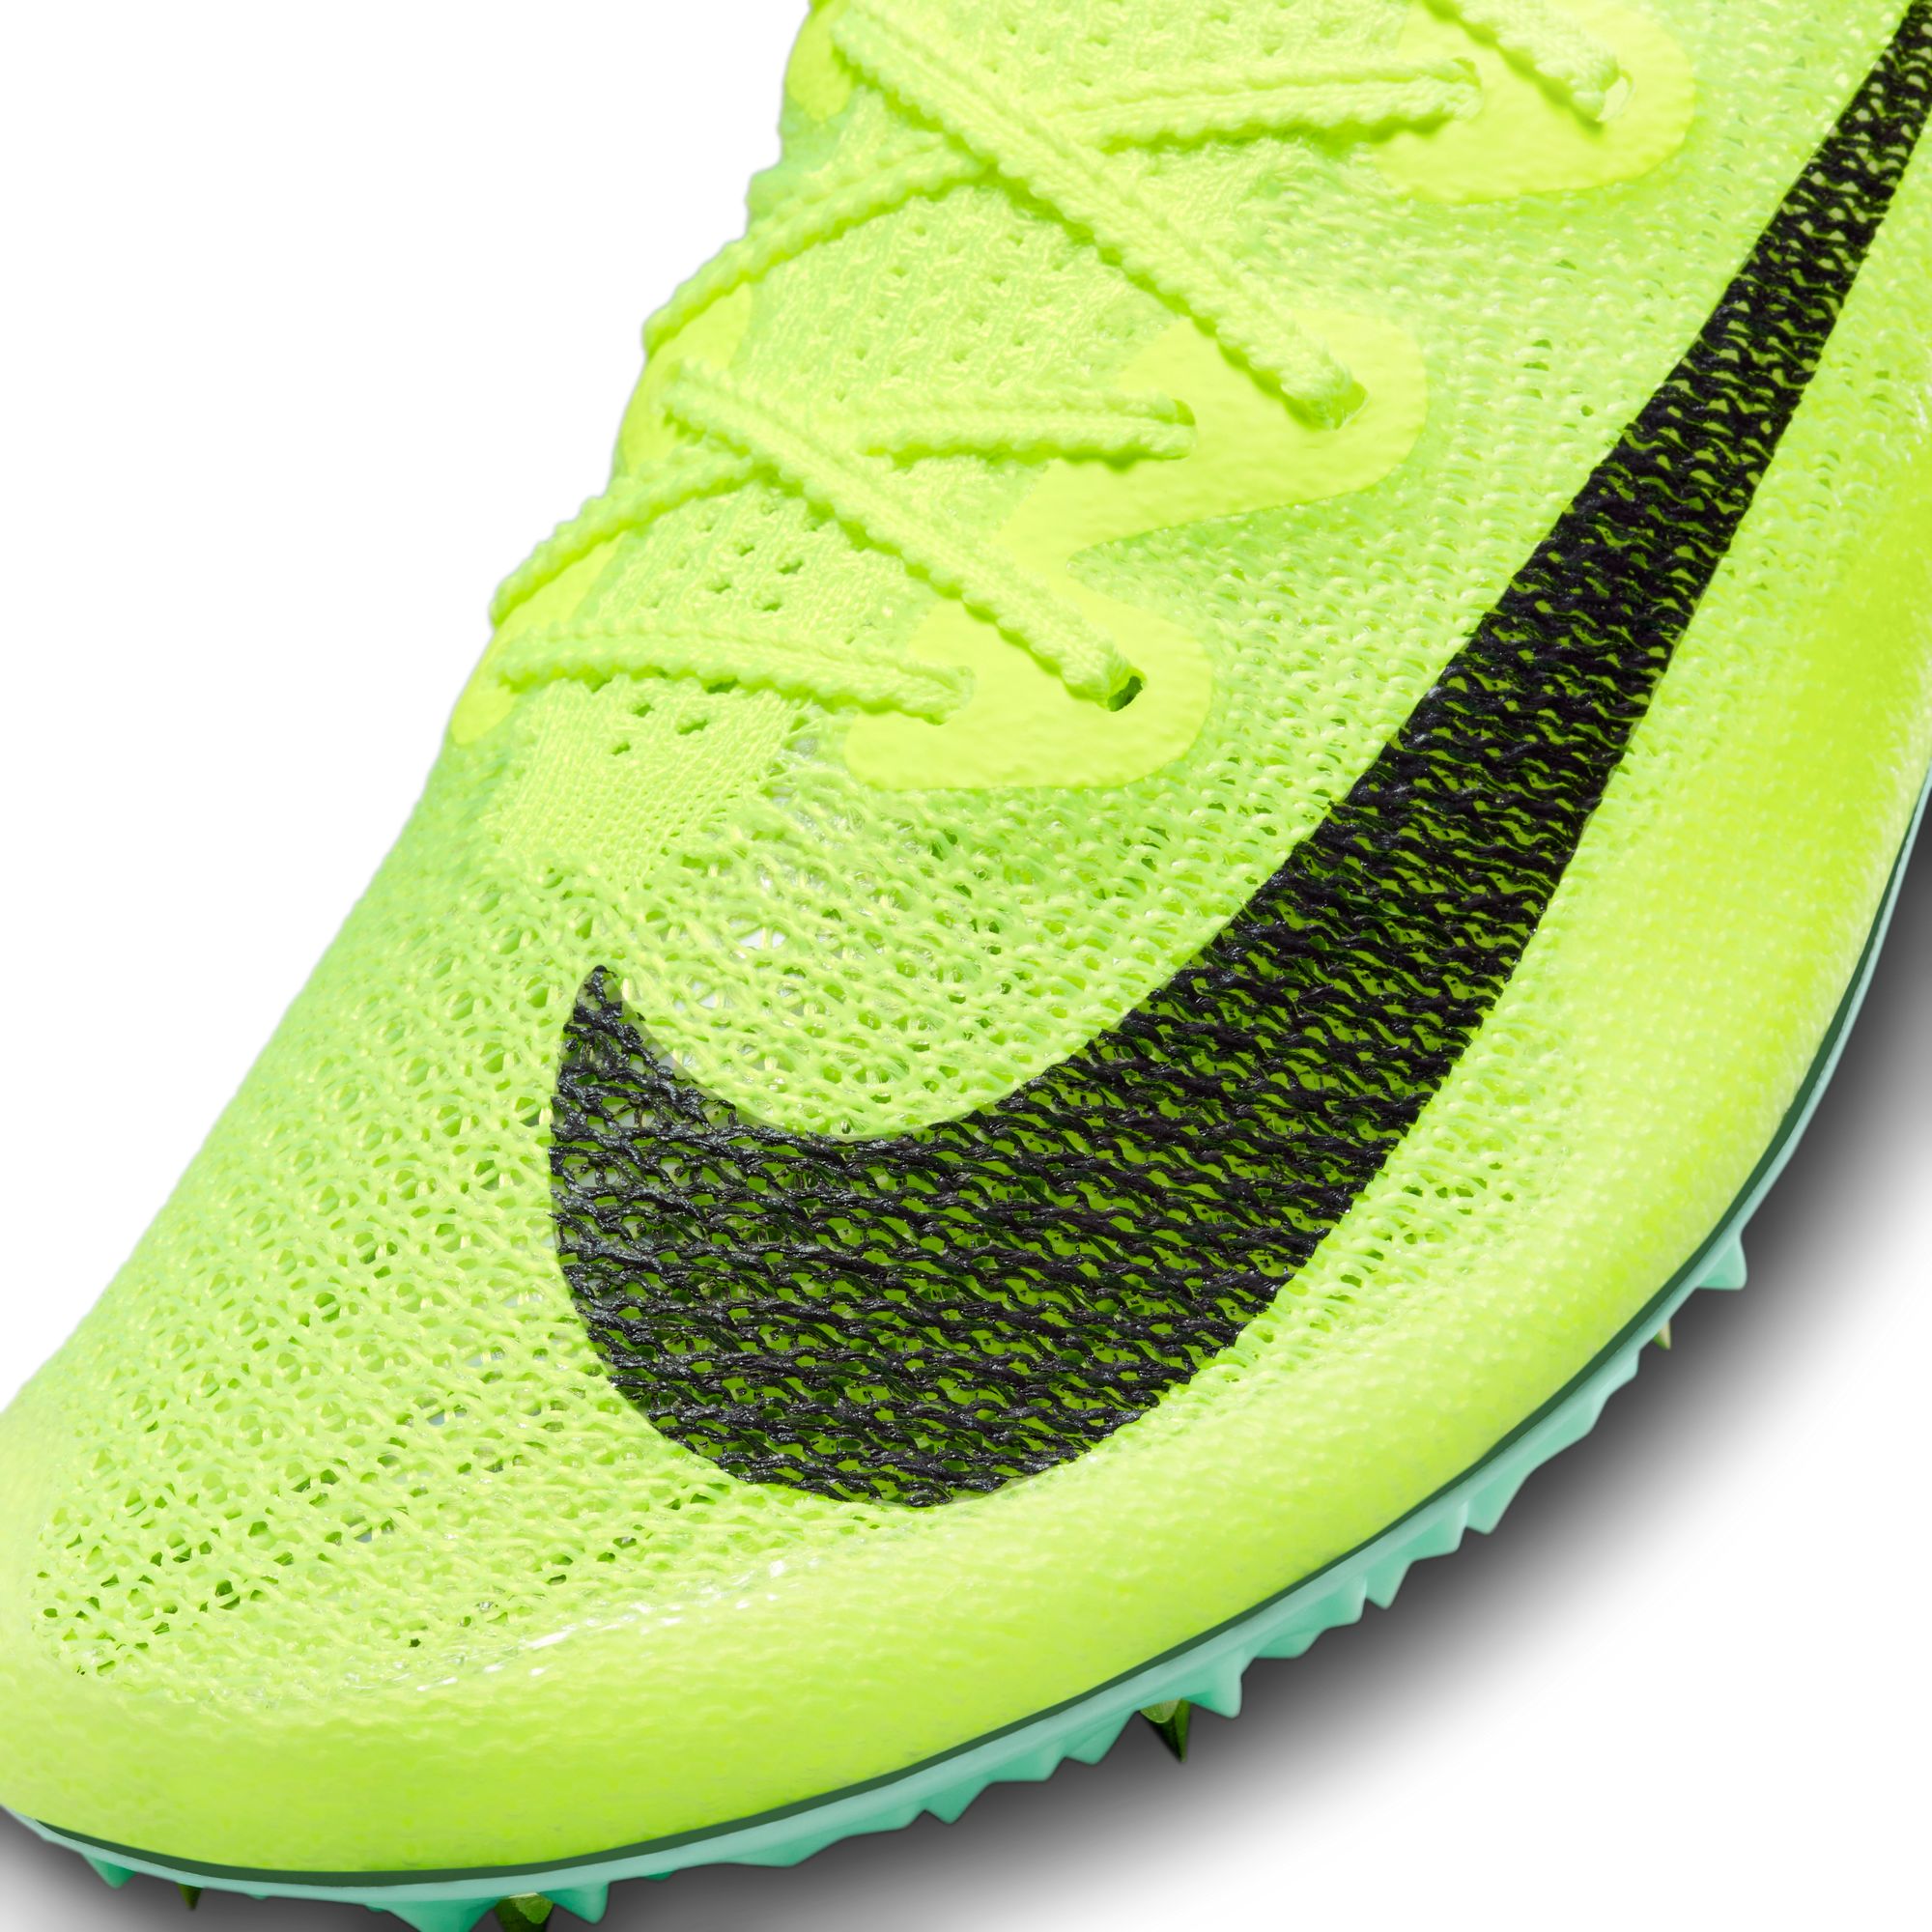 Nike Men's Zoom Superfly Elite 2 Flyknit Running Shoes | Sportchek